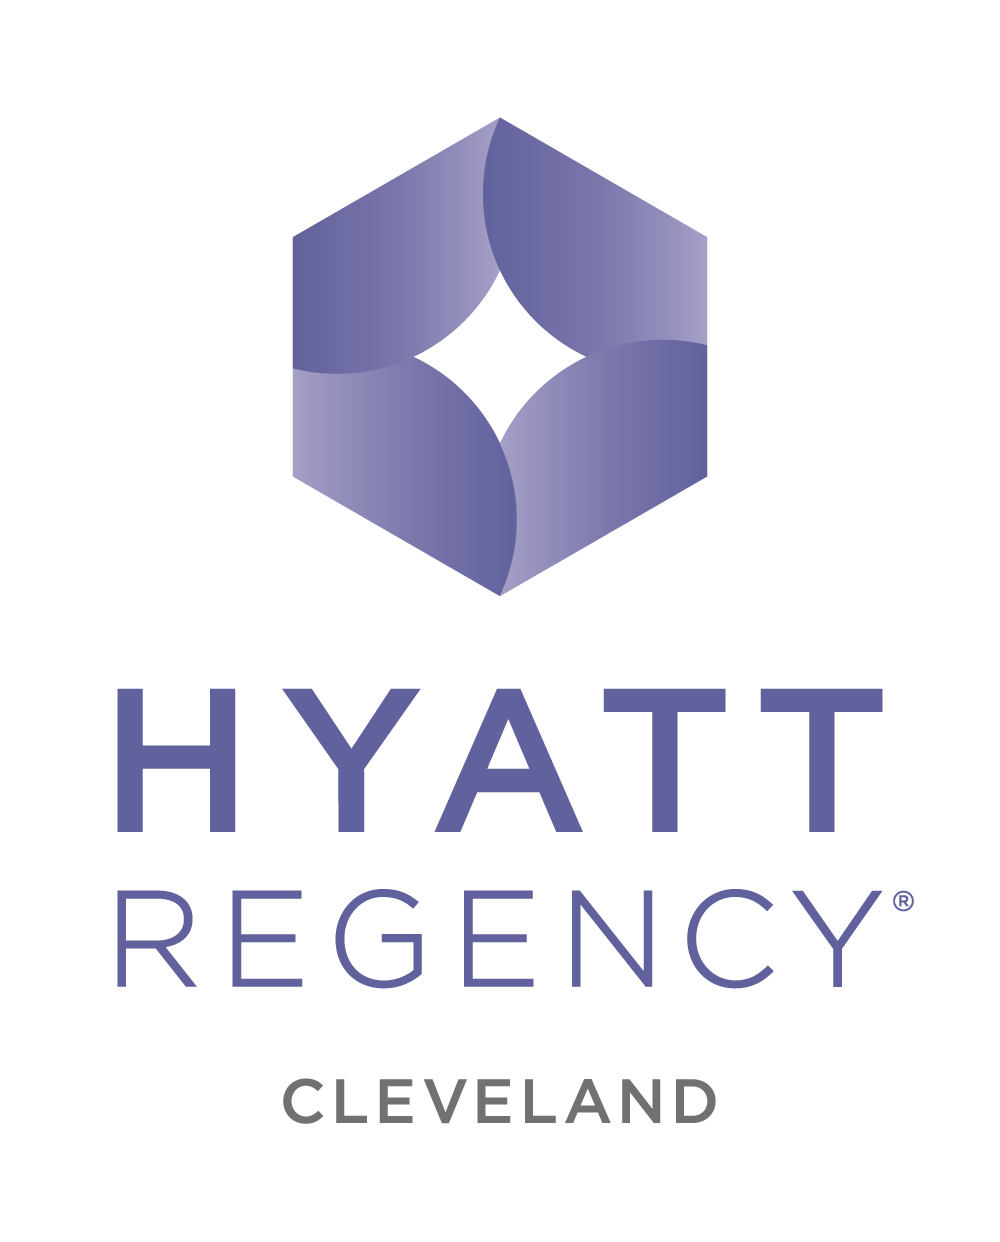 Hyatt Regency Cleveland at the Arcade logo